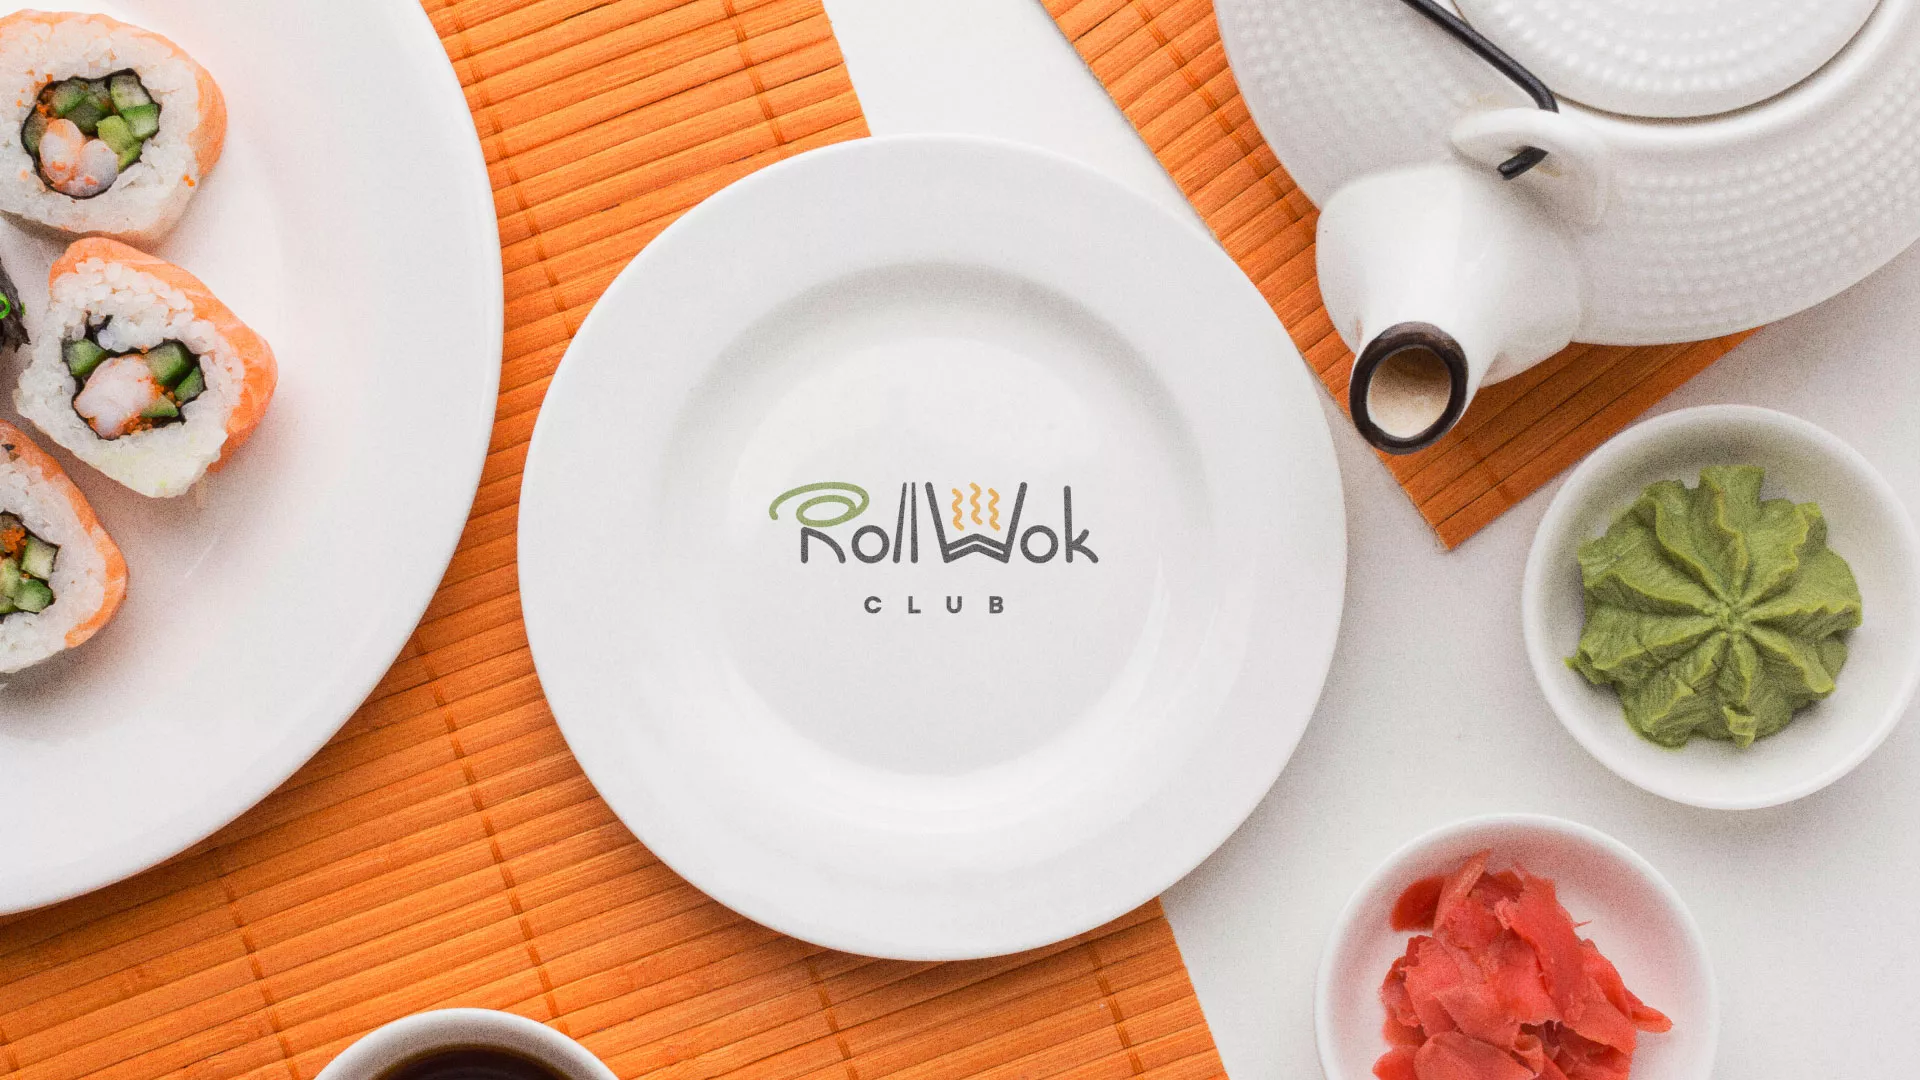 Разработка логотипа и фирменного стиля суши-бара «Roll Wok Club» в Самаре